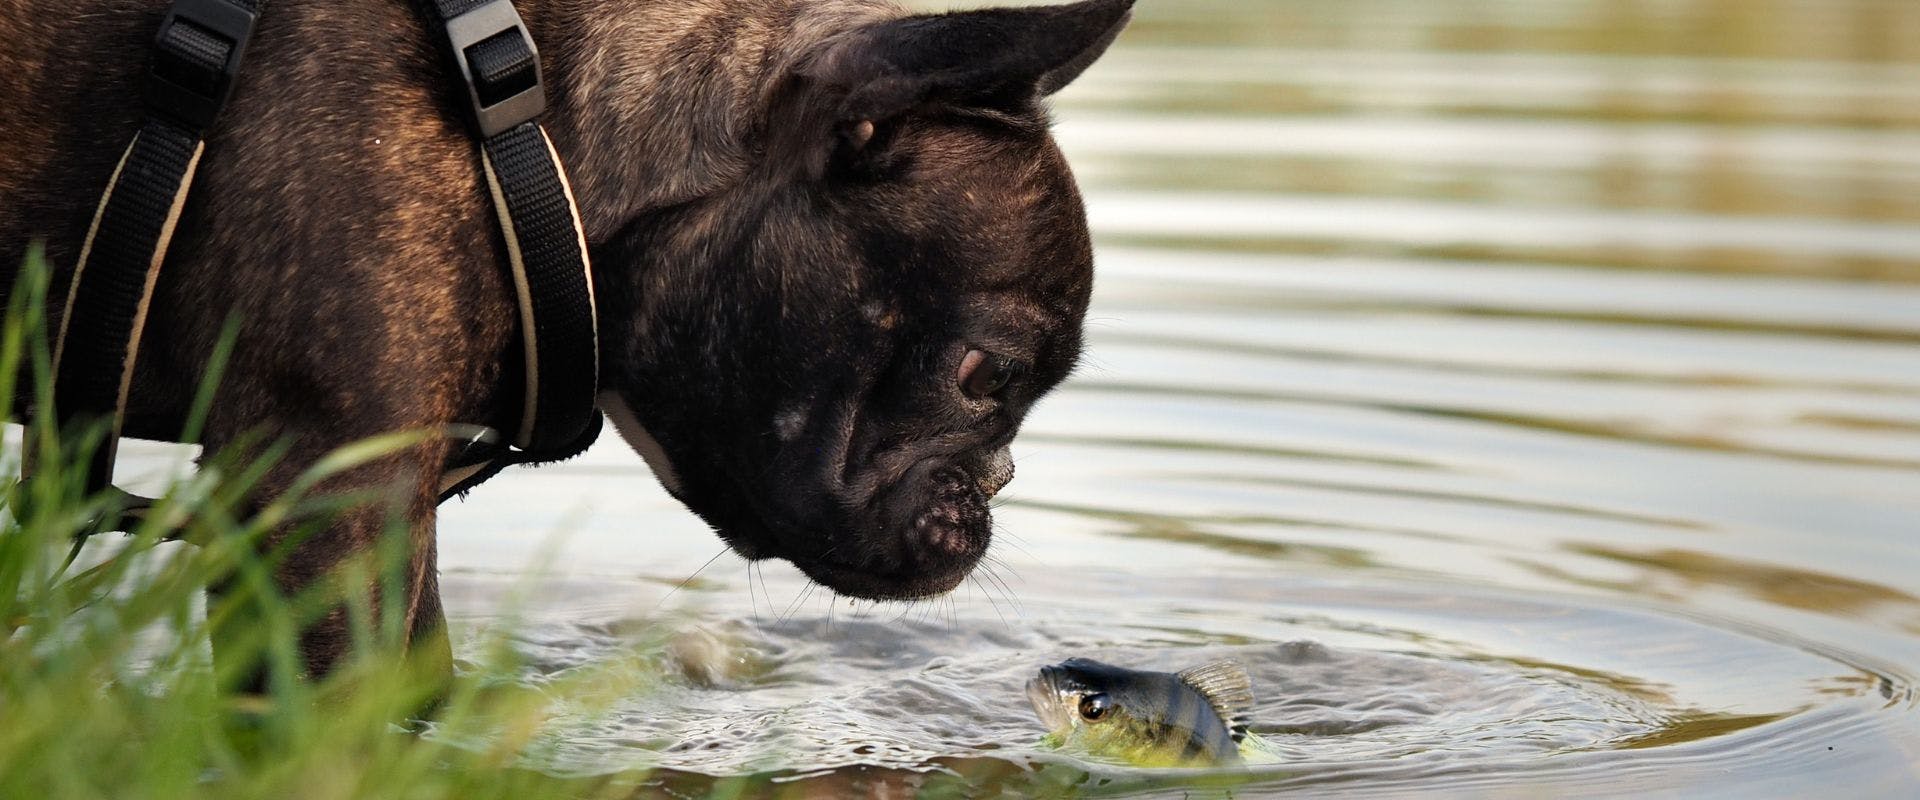 Small brown dog looking at a river fish